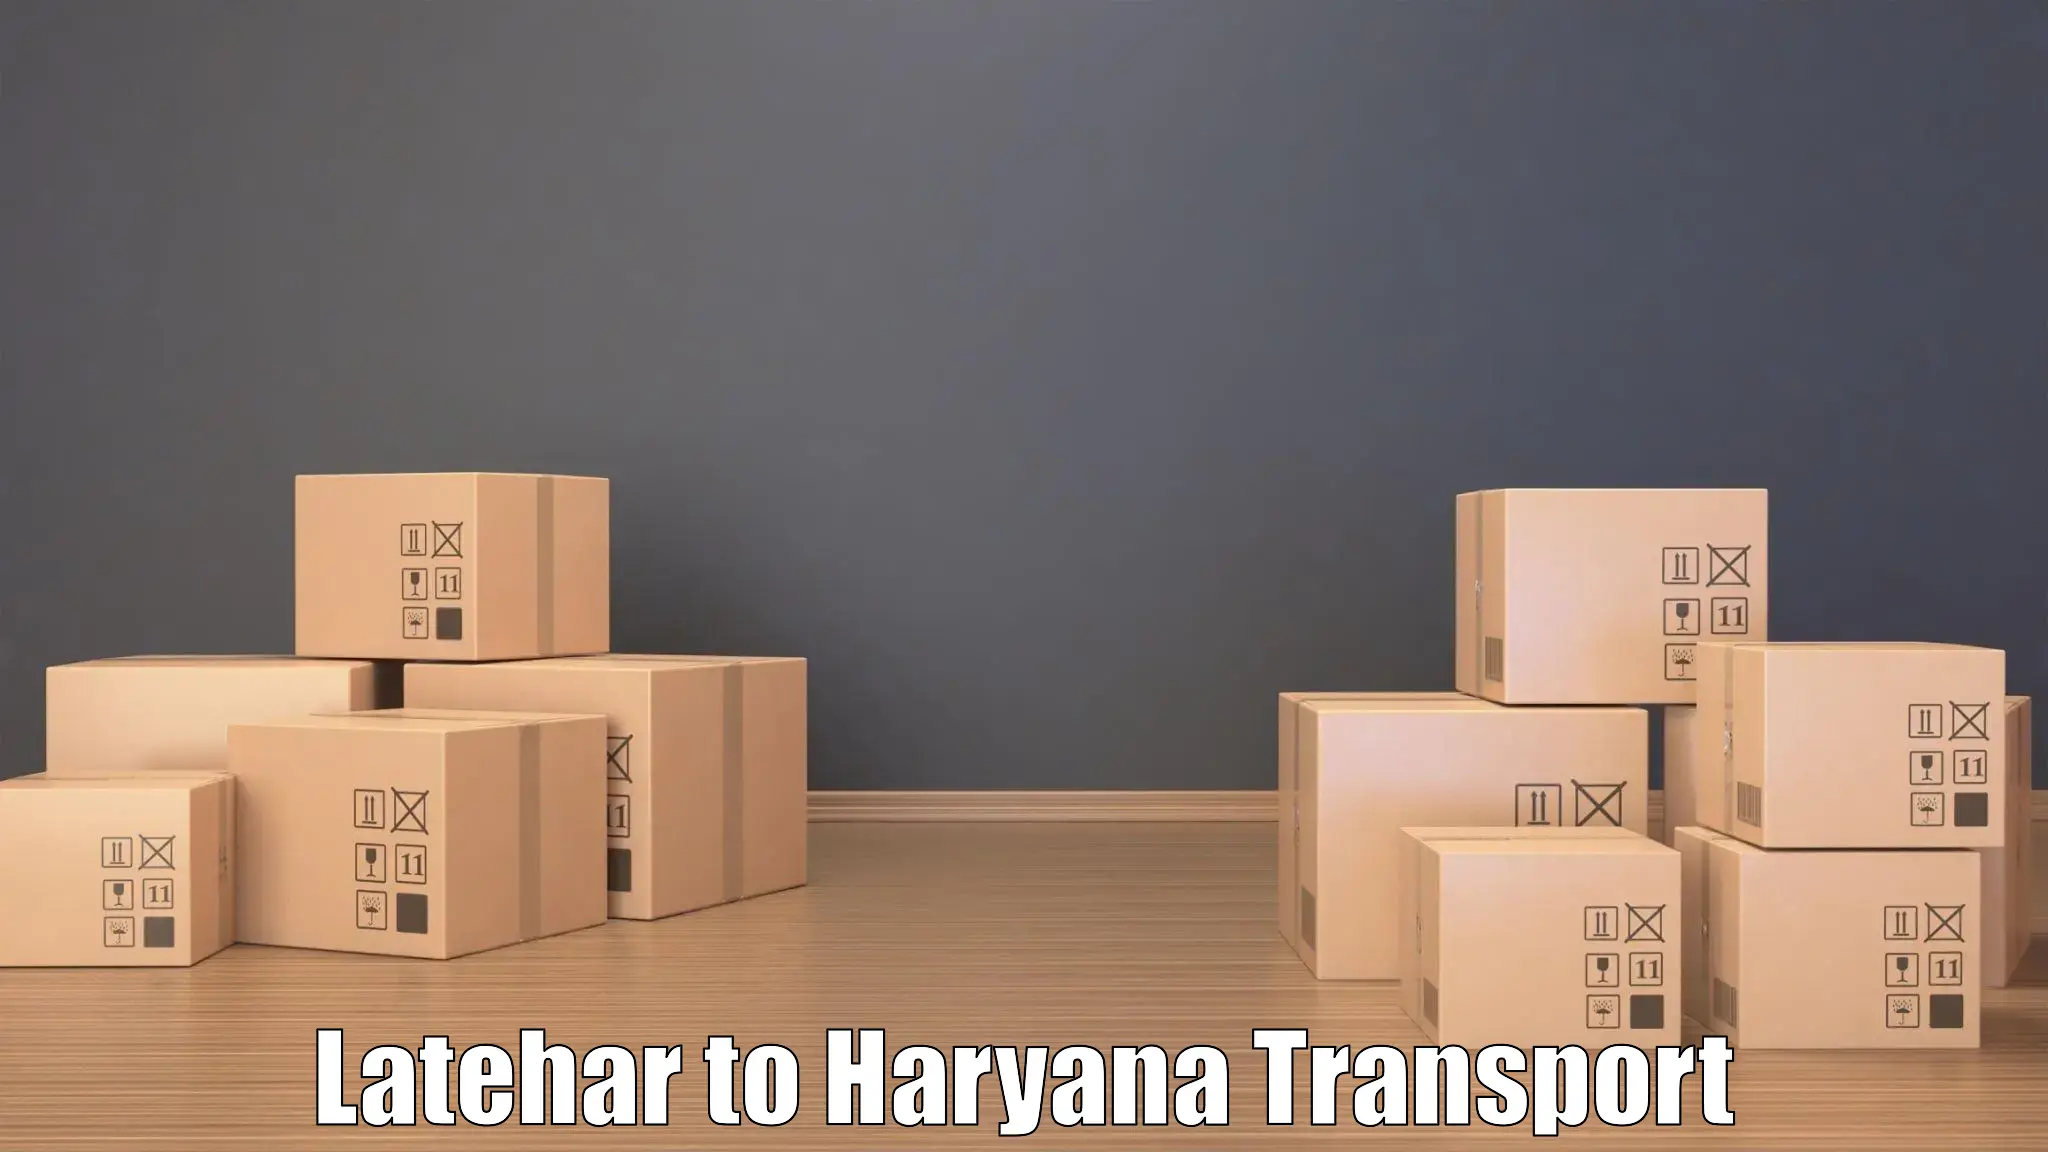 Road transport online services Latehar to Hansi